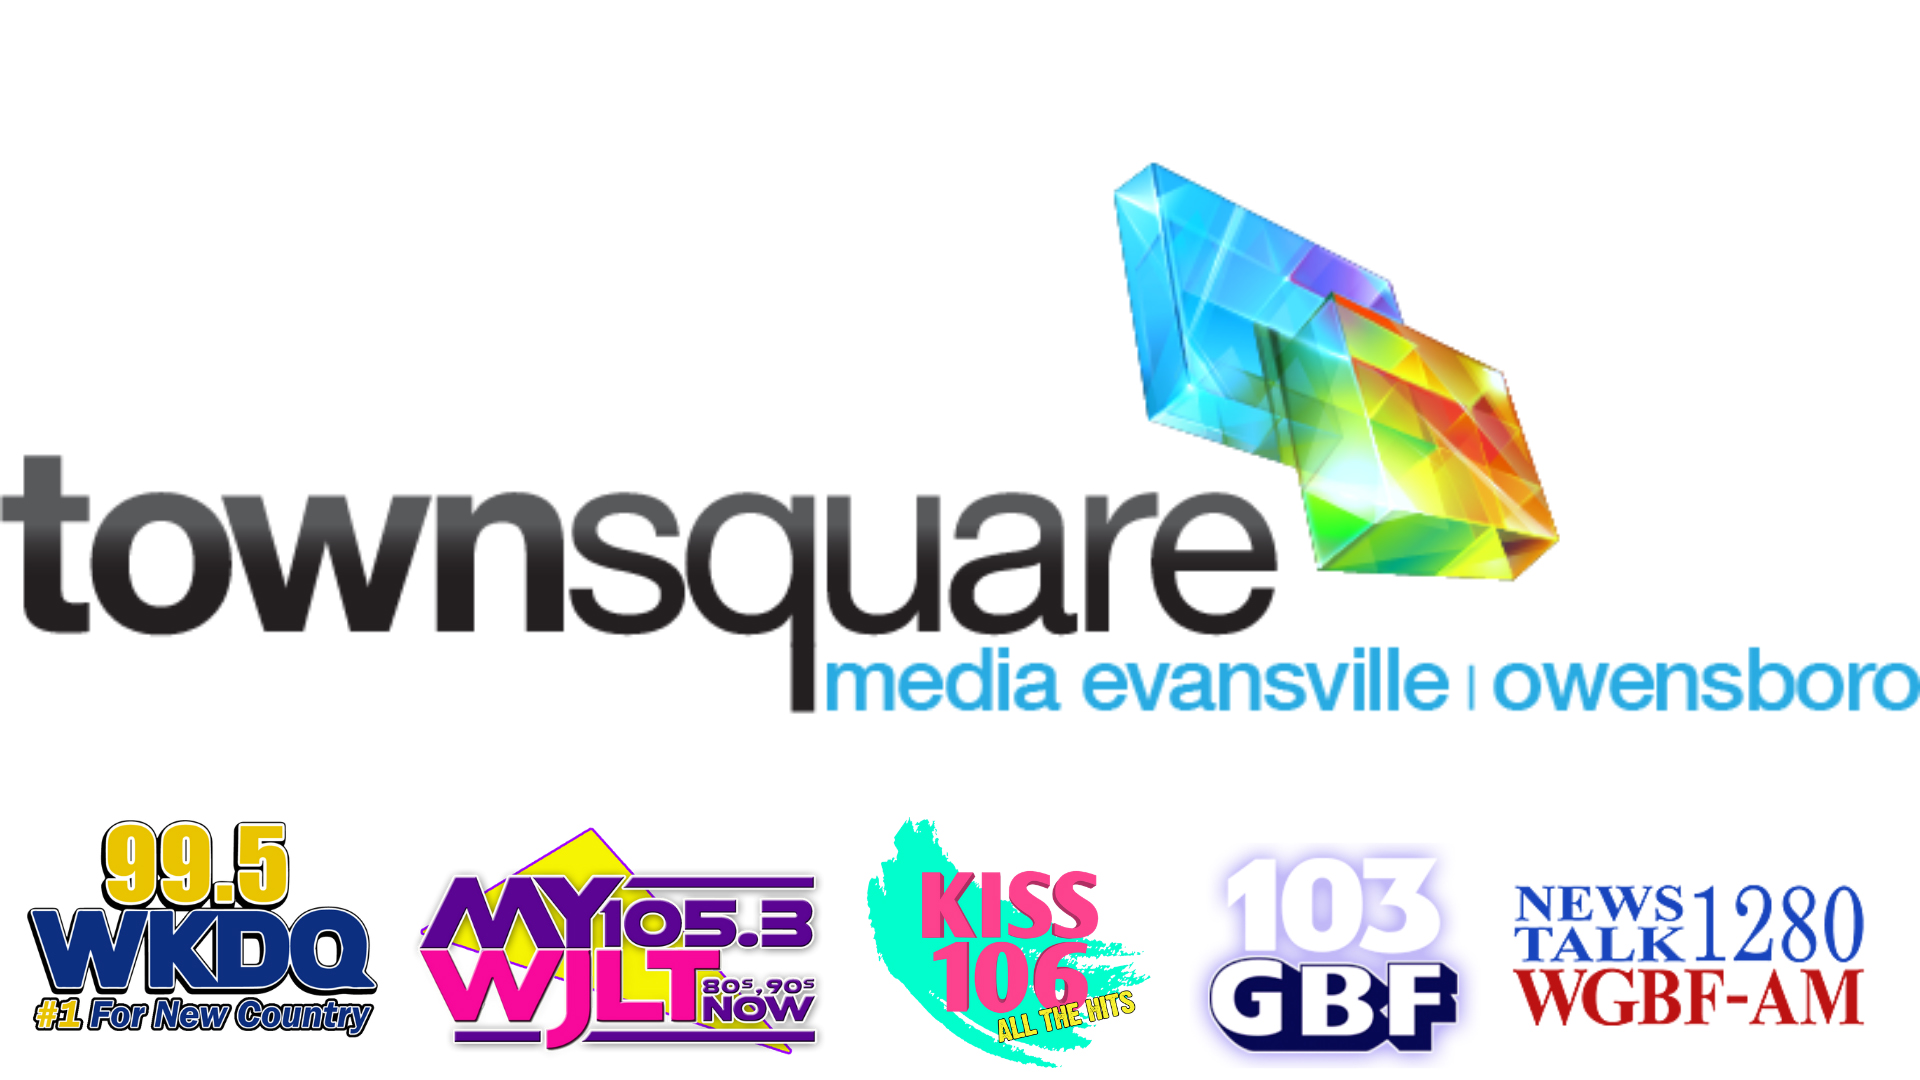 Townsquare Media Evansville | Owensboro